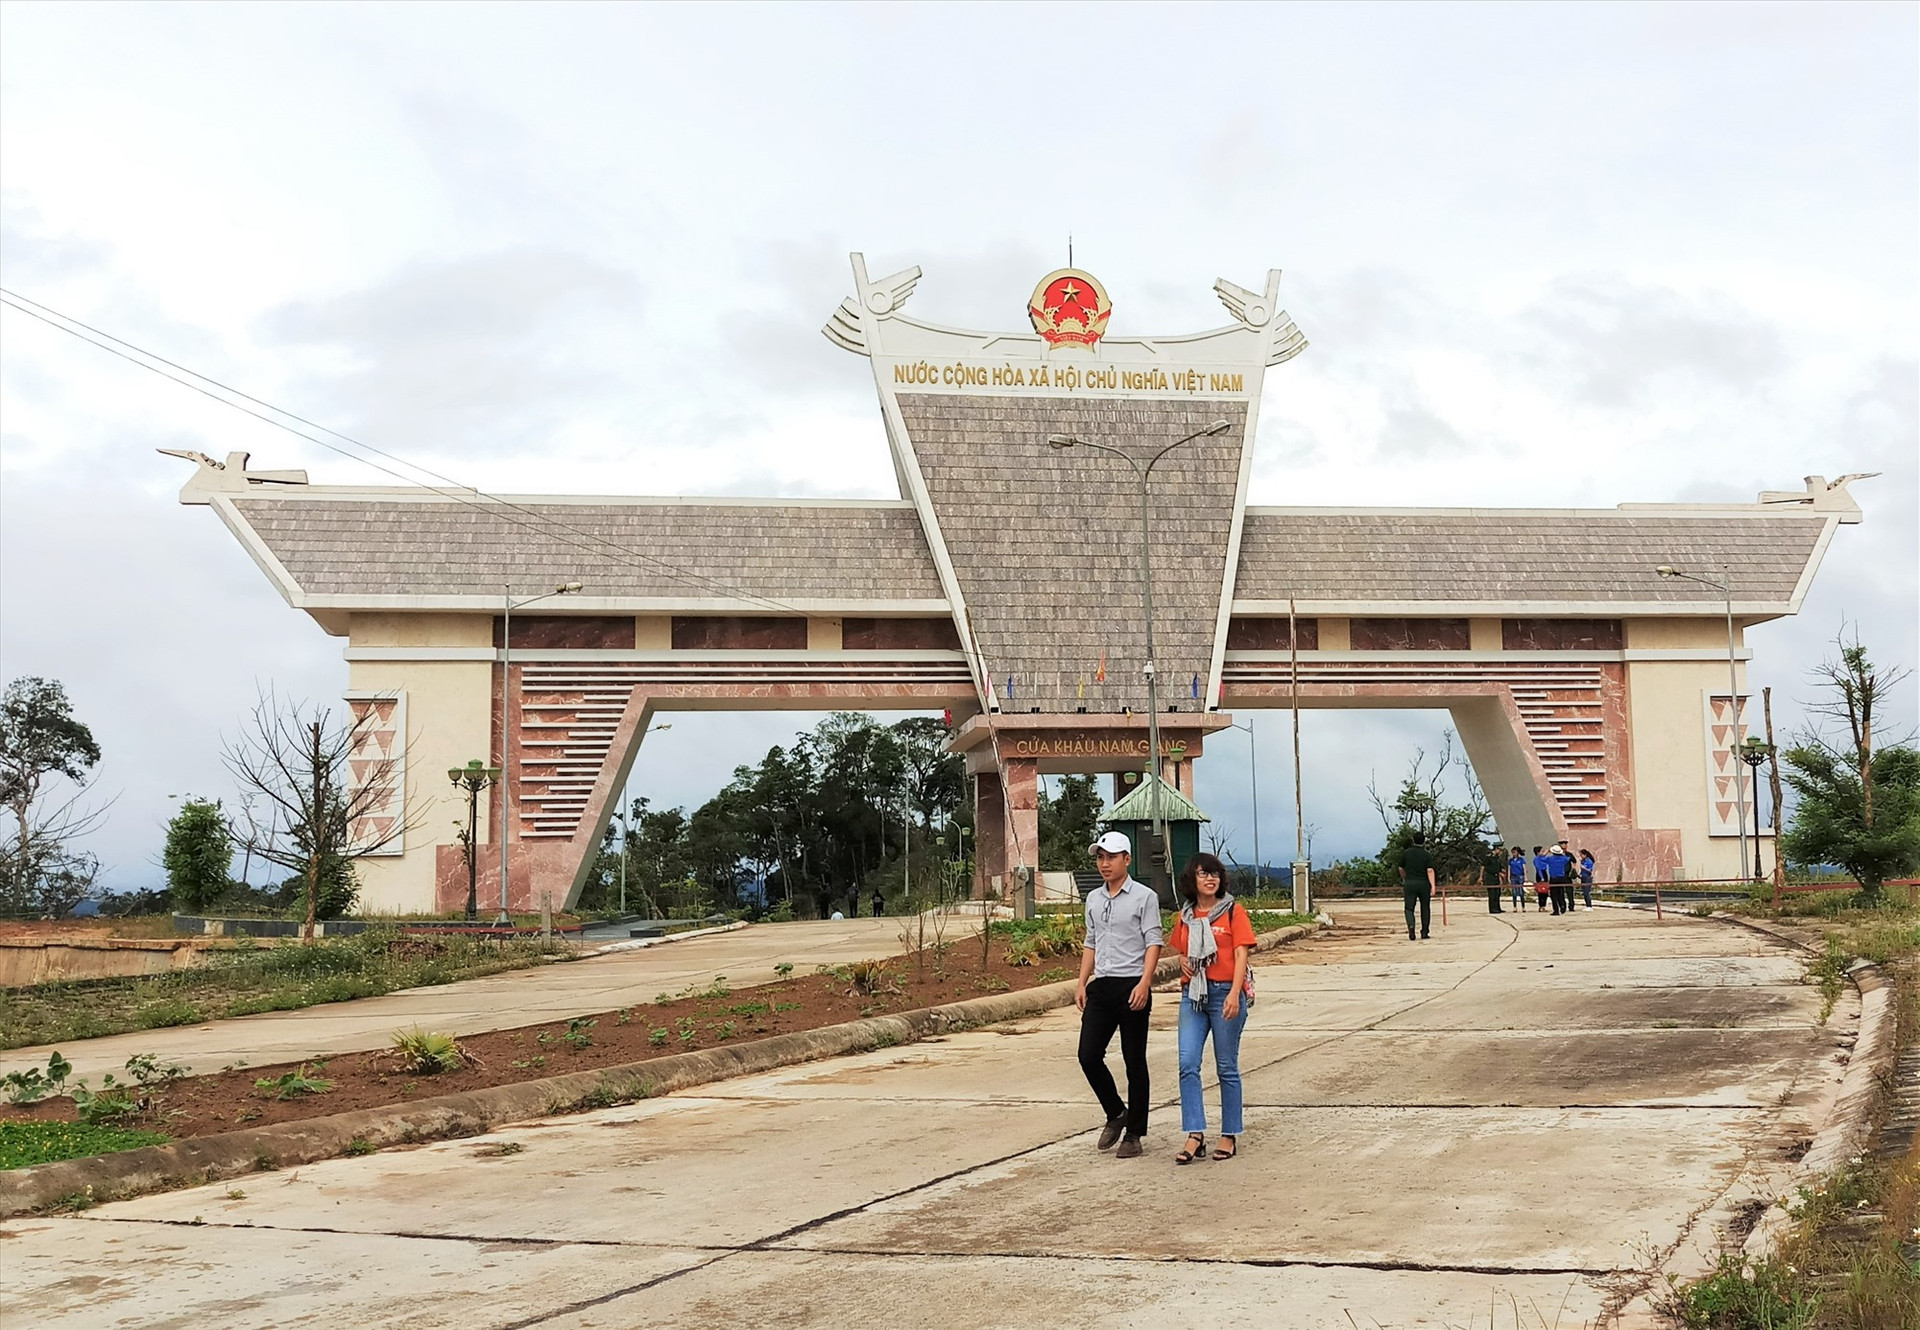 Quốc môn được xây dựng tại Cửa khẩu quốc tế Nam Giang - Đắc Tà Oọc. Ảnh: ALĂNG NGƯỚC